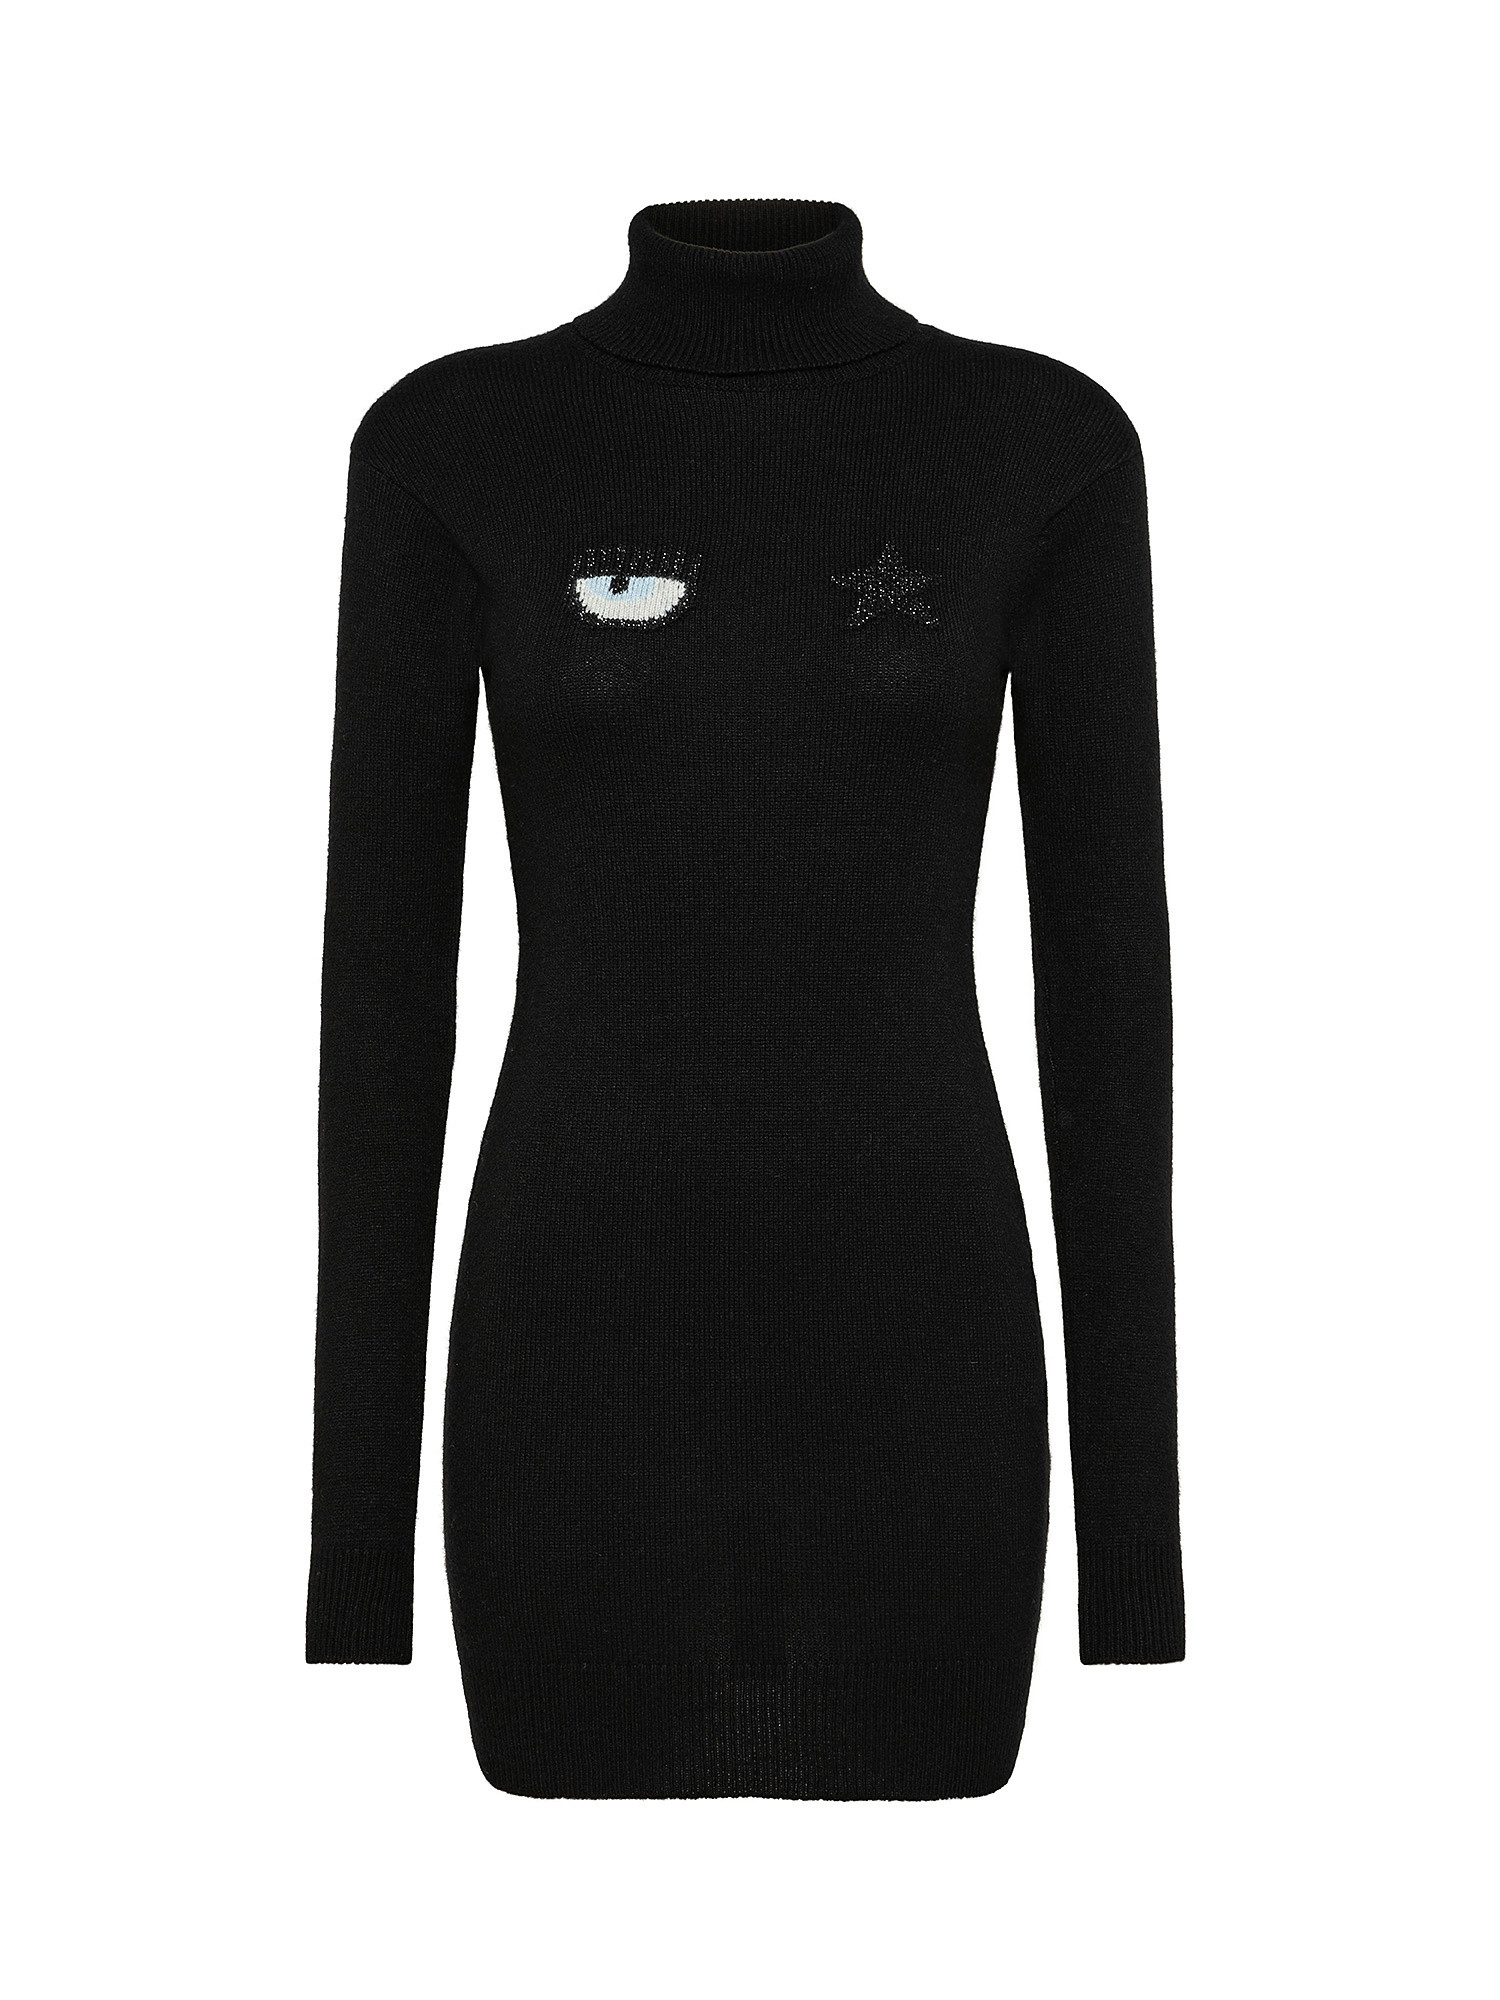 Eye Star dress, Black, large image number 0